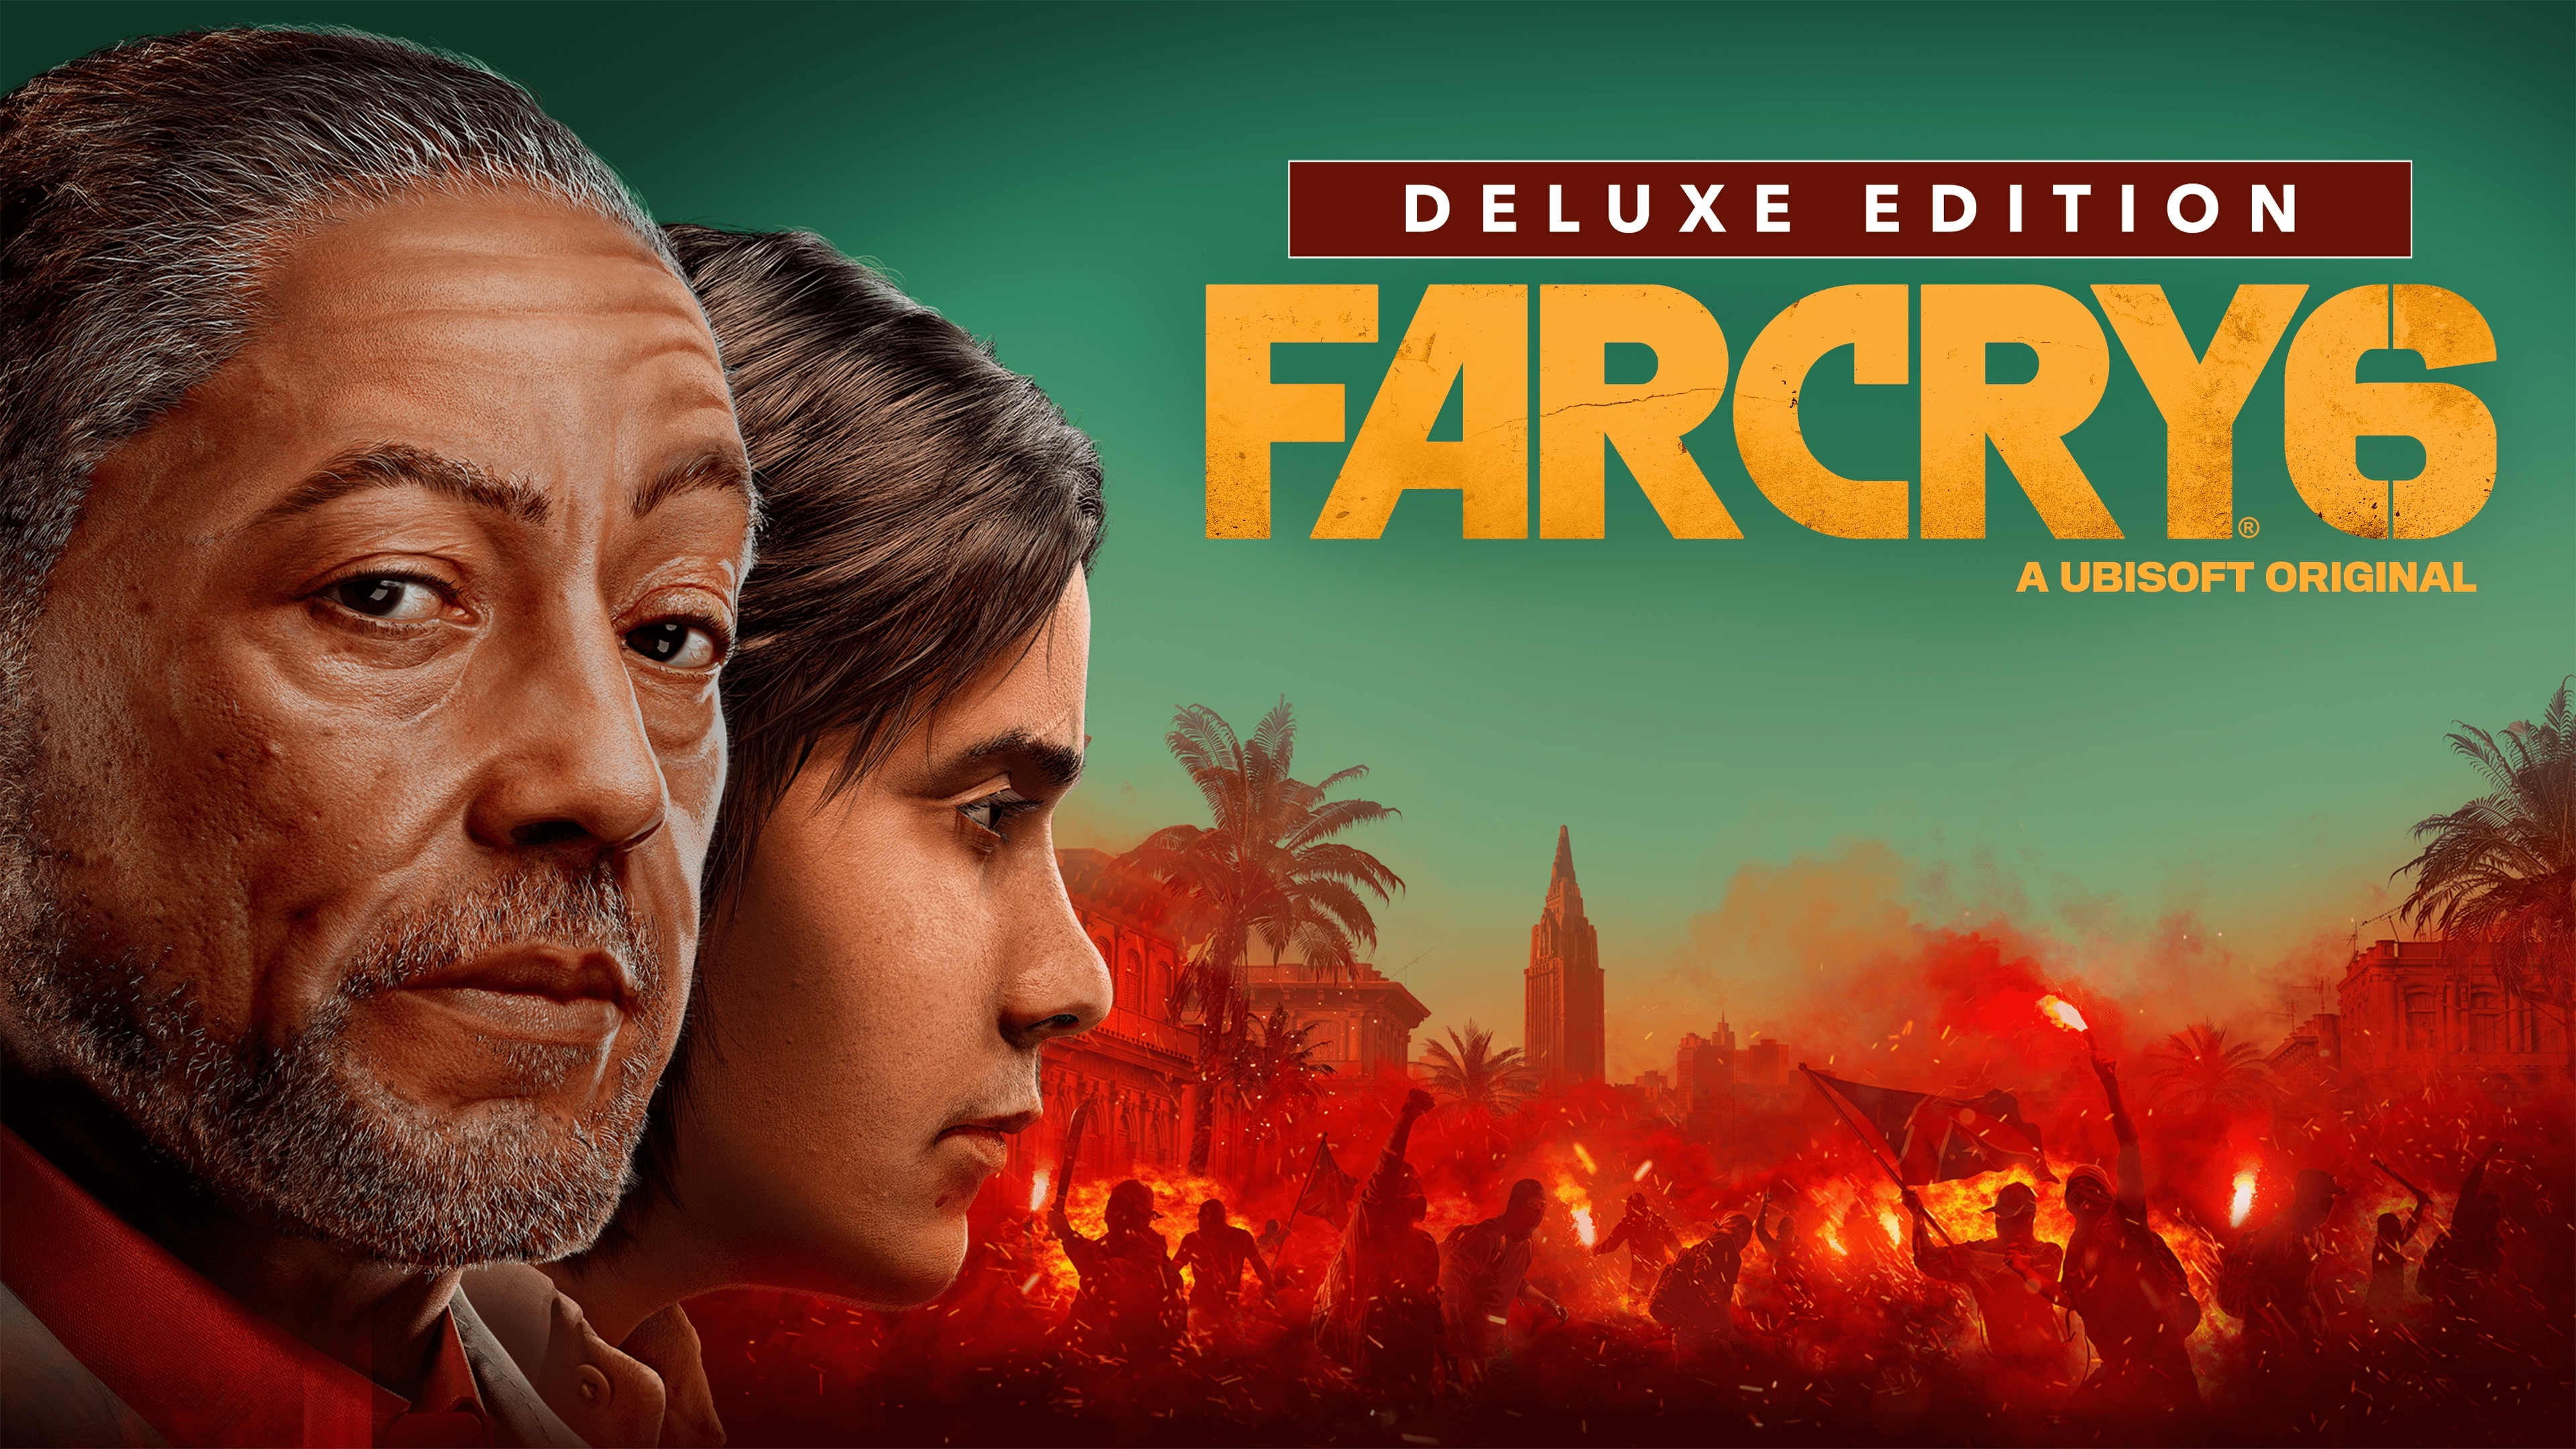 Far Cry 3: Sangue de Dragão  Baixe e compre hoje - Epic Games Store